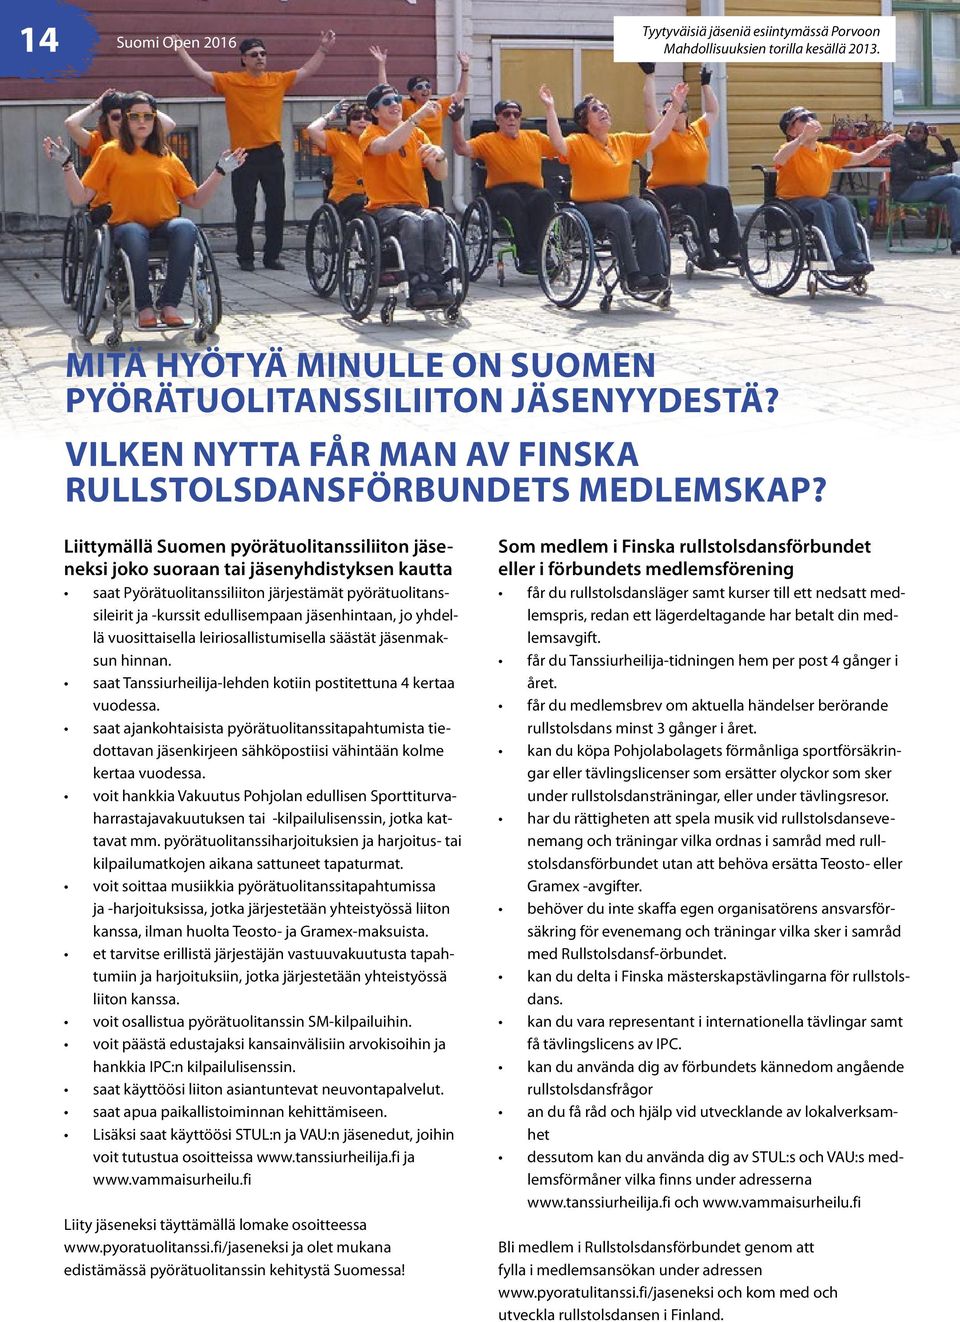 Liittymällä Suomen pyörätuolitanssiliiton jäseneksi joko suoraan tai jäsenyhdistyksen kautta saat Pyörätuolitanssiliiton järjestämät pyörätuolitanssileirit ja -kurssit edullisempaan jäsenhintaan, jo